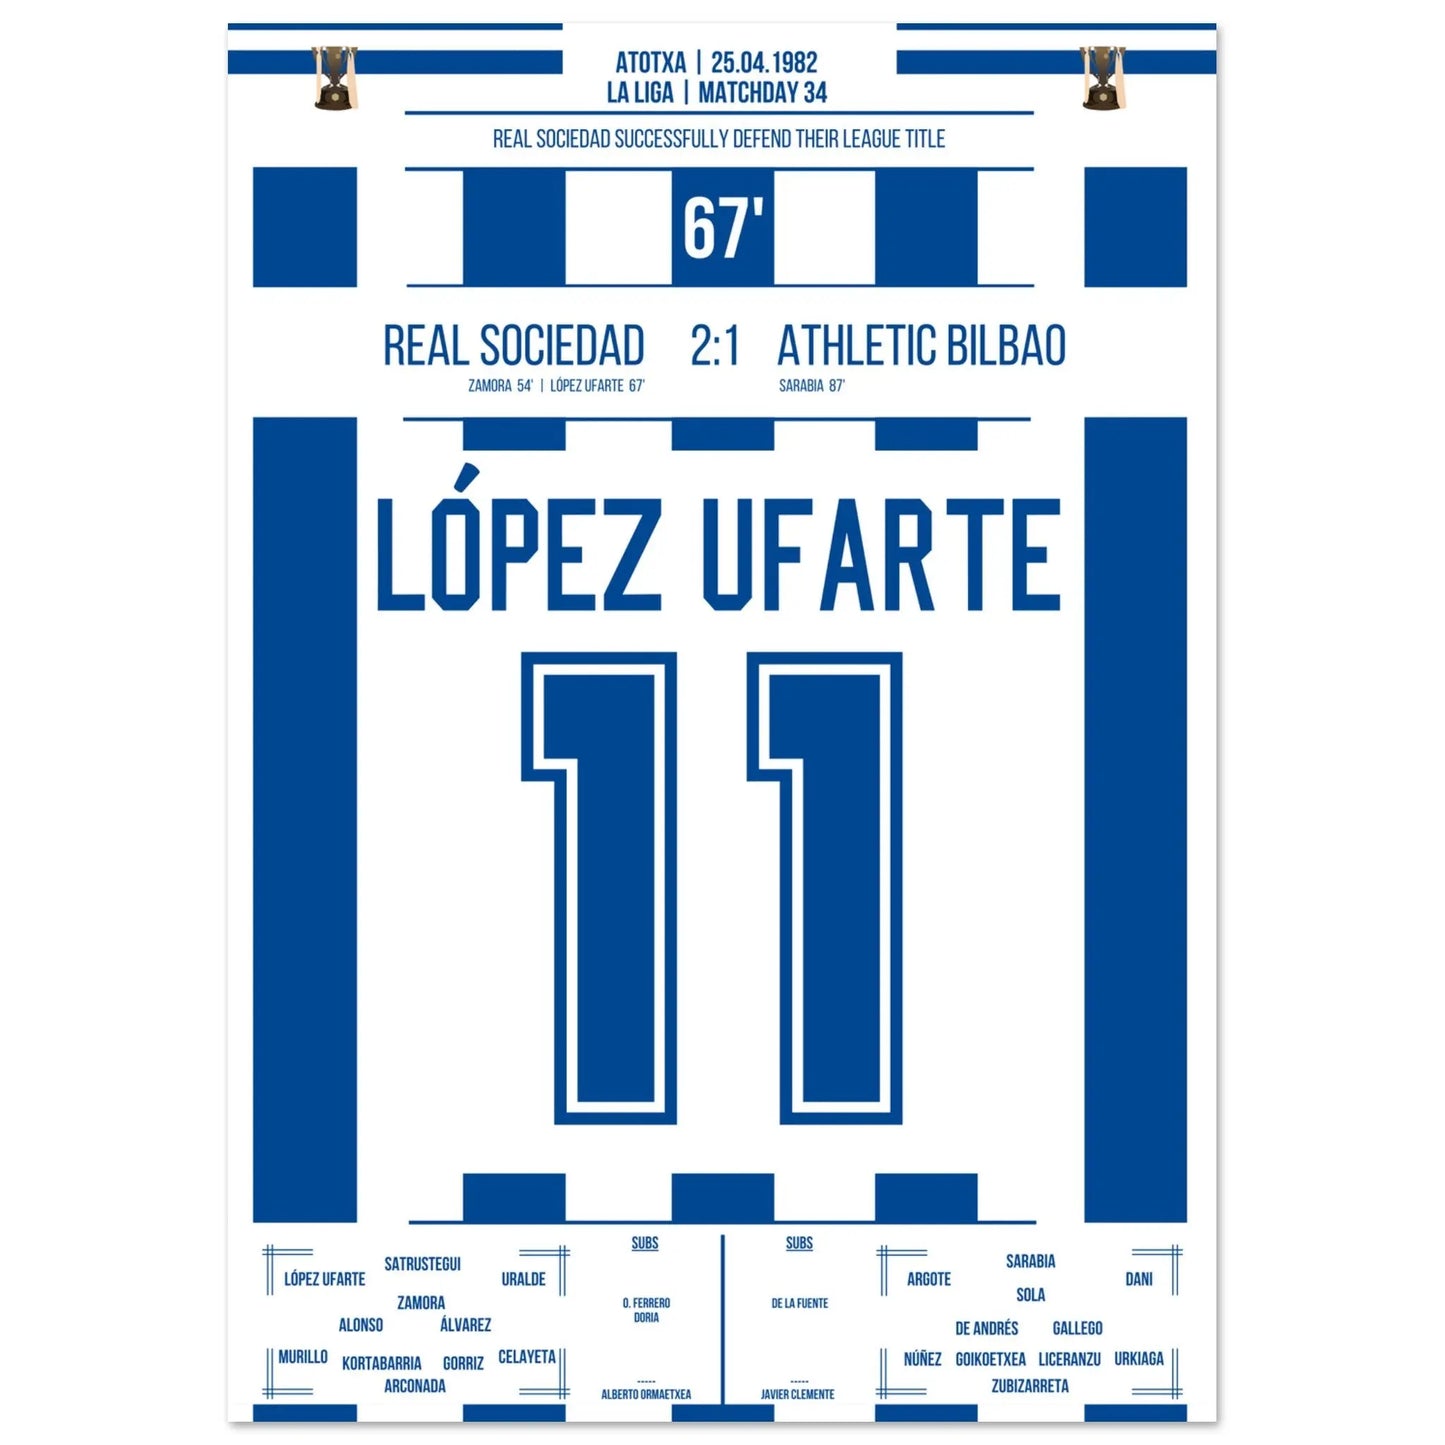 Le but de López Ufarte pour défendre son titre en 1982